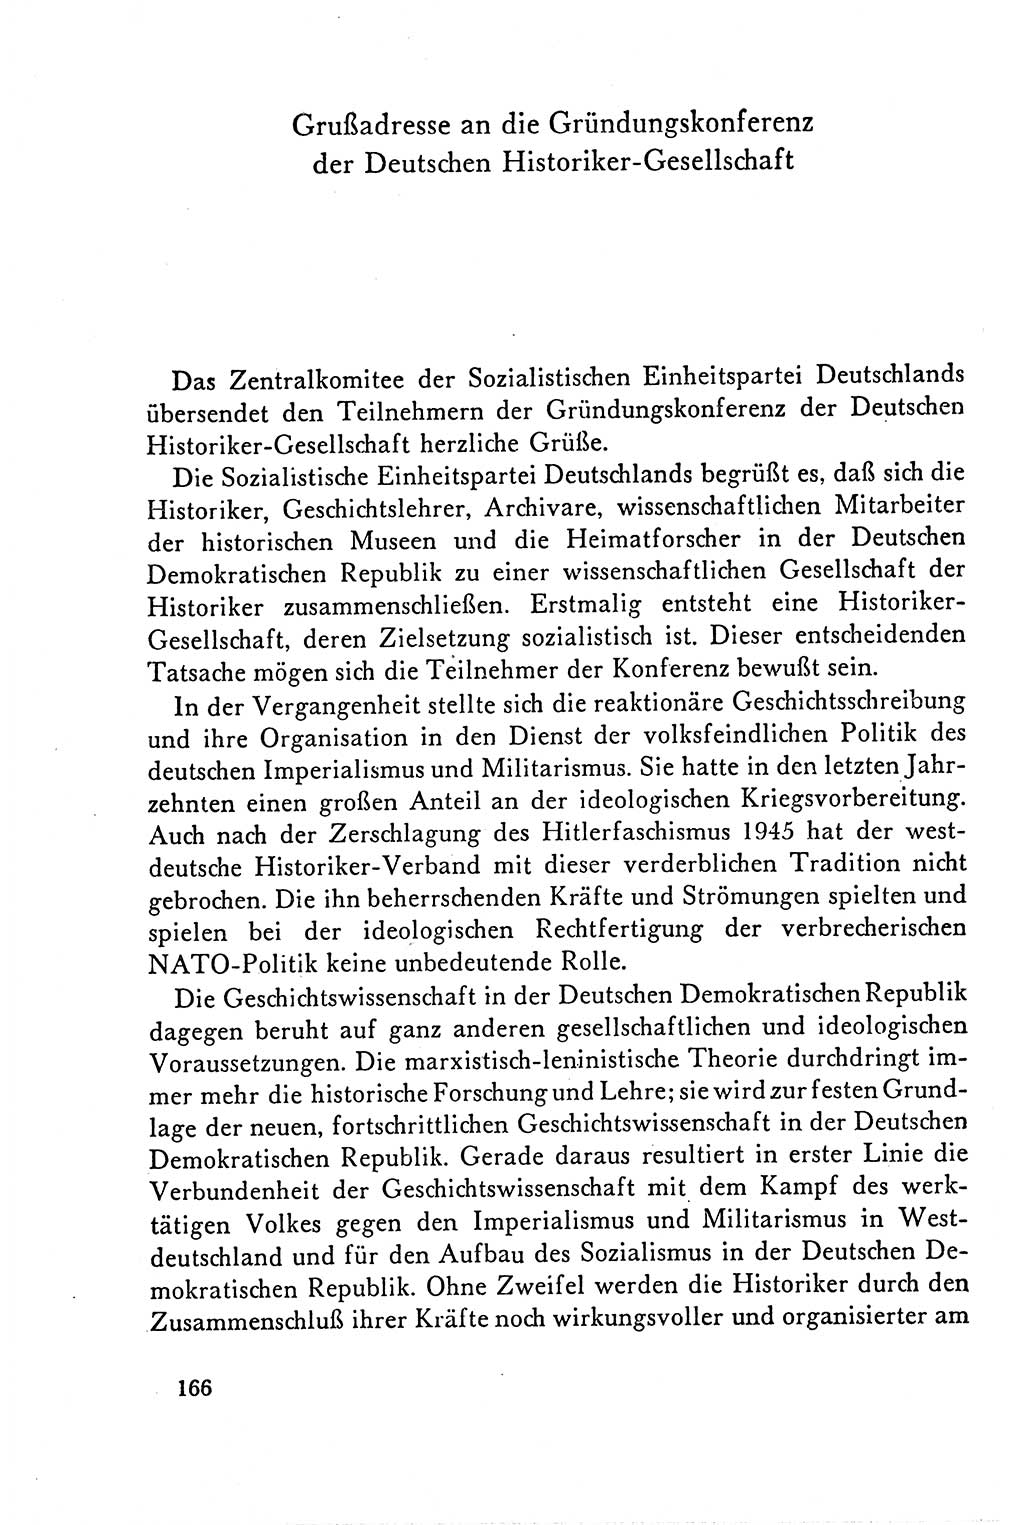 Dokumente der Sozialistischen Einheitspartei Deutschlands (SED) [Deutsche Demokratische Republik (DDR)] 1958-1959, Seite 166 (Dok. SED DDR 1958-1959, S. 166)